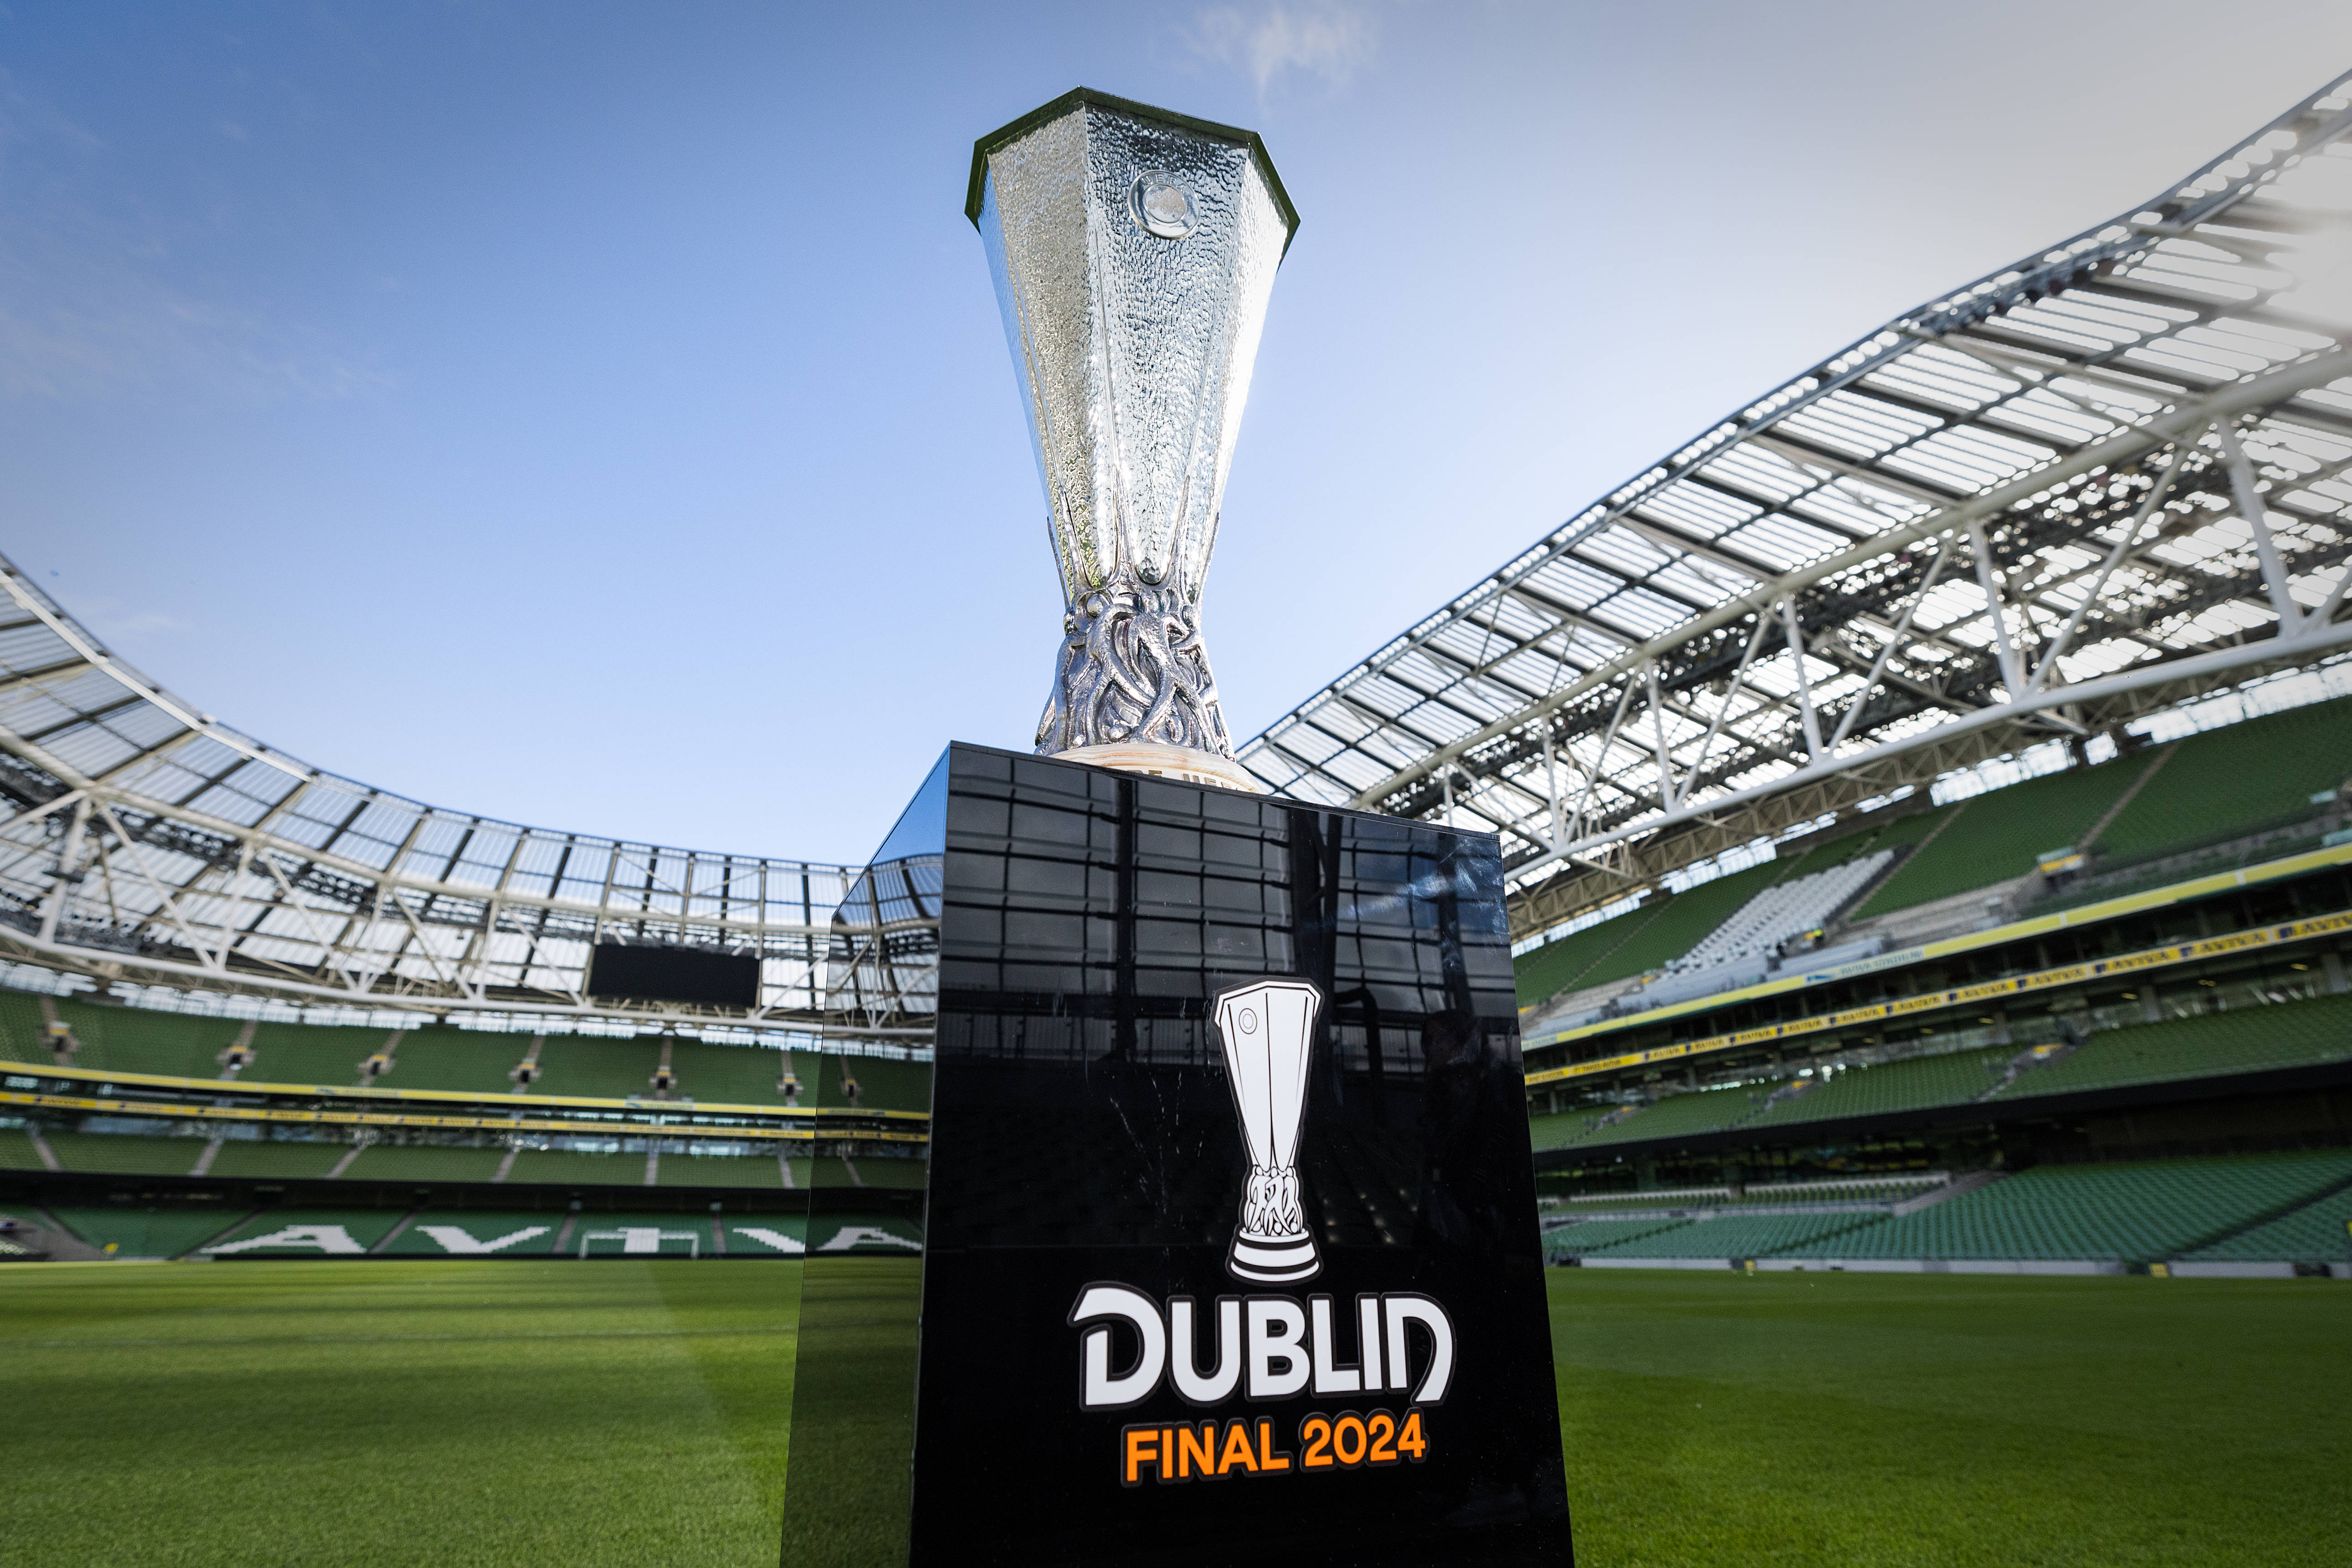 De finale van de Europa League 2024 wordt gespeeld tussen Atalanta en Bayer Leverkusen in het Aviva Stadion in Dublin